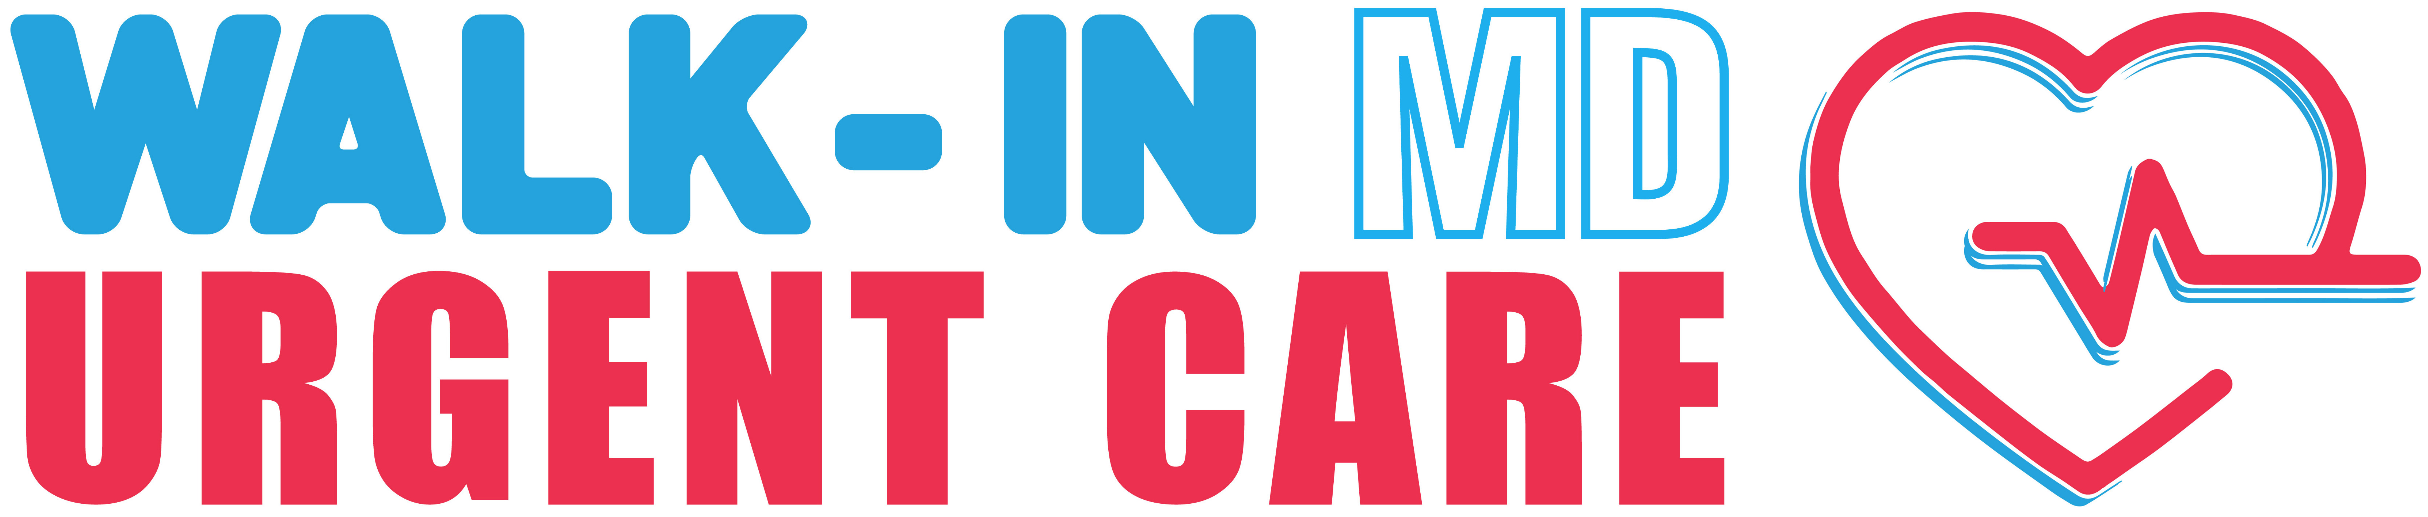 Walk-In Md Urgent Care - Urgent Care Logo